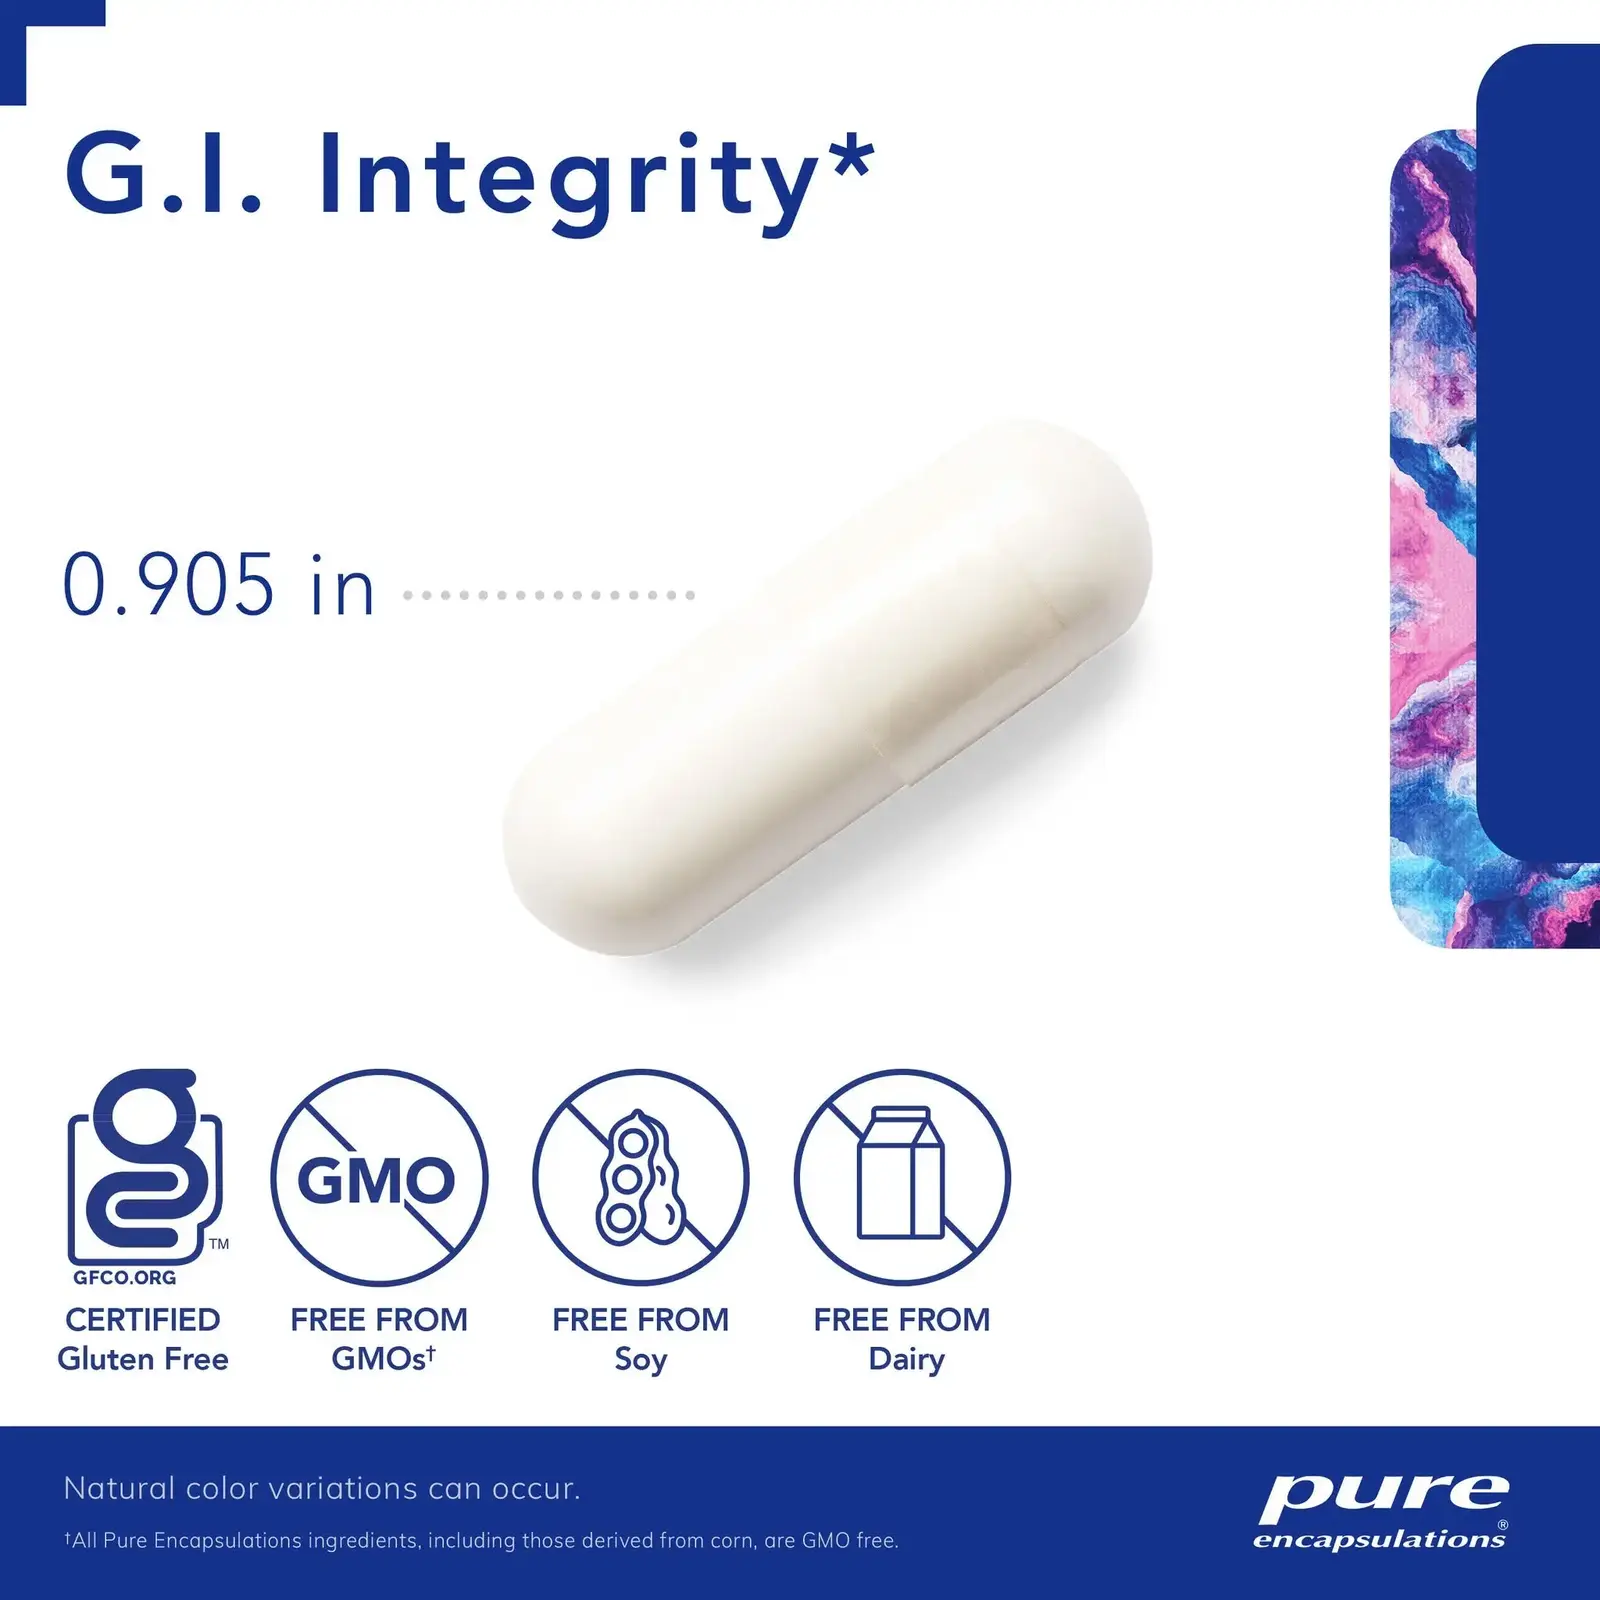 G.I. Integrity‡